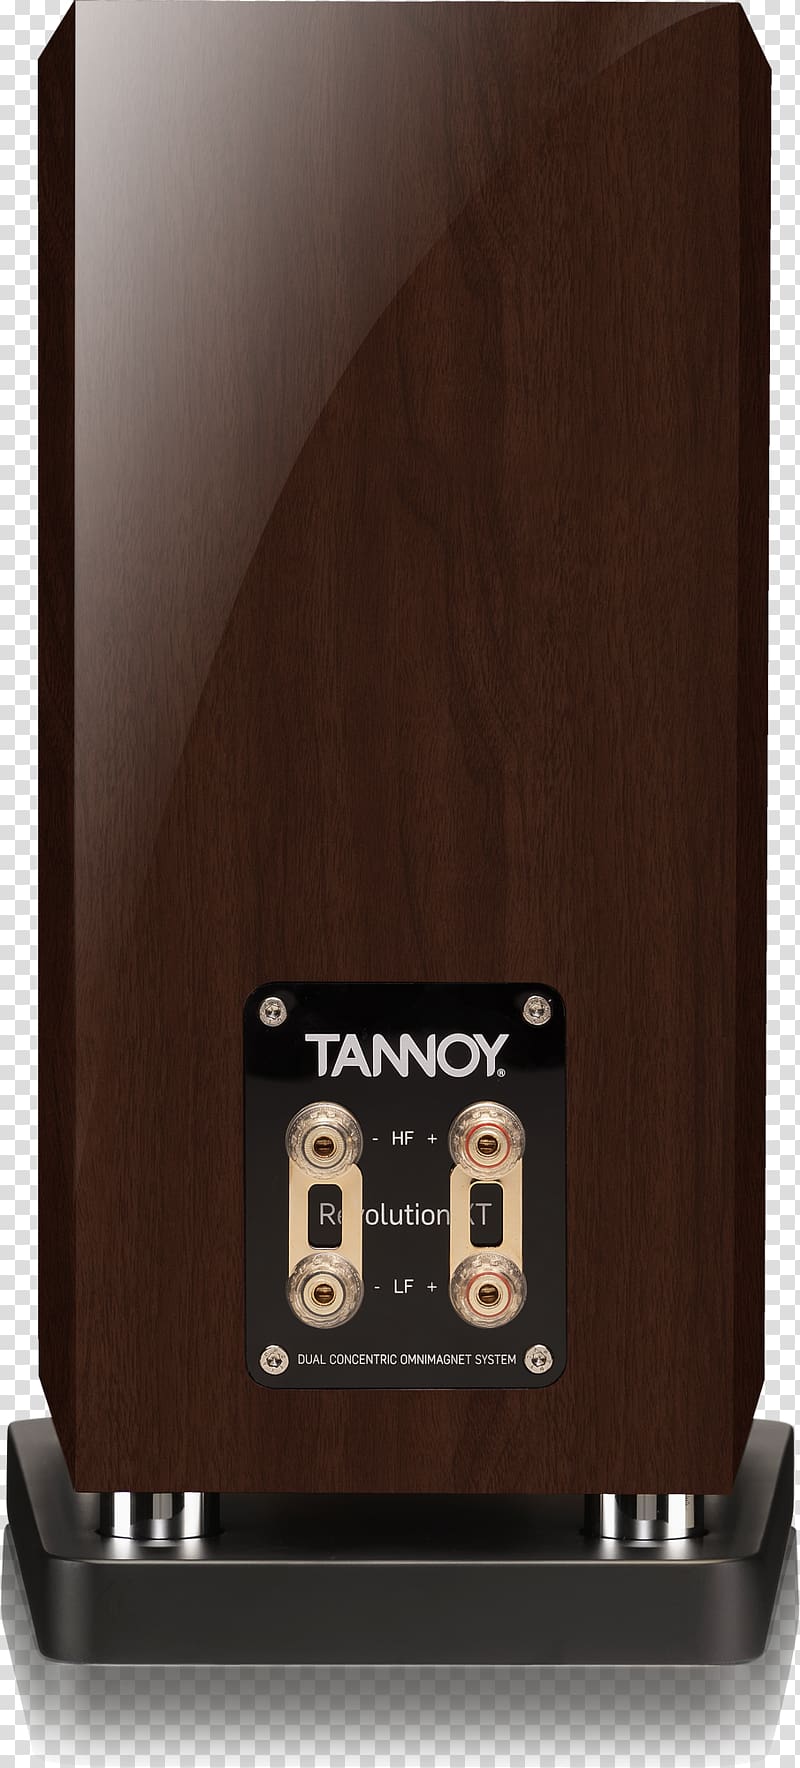 Tannoy Revolution Xt 6 Speakers Loudspeaker Bookshelf Speaker